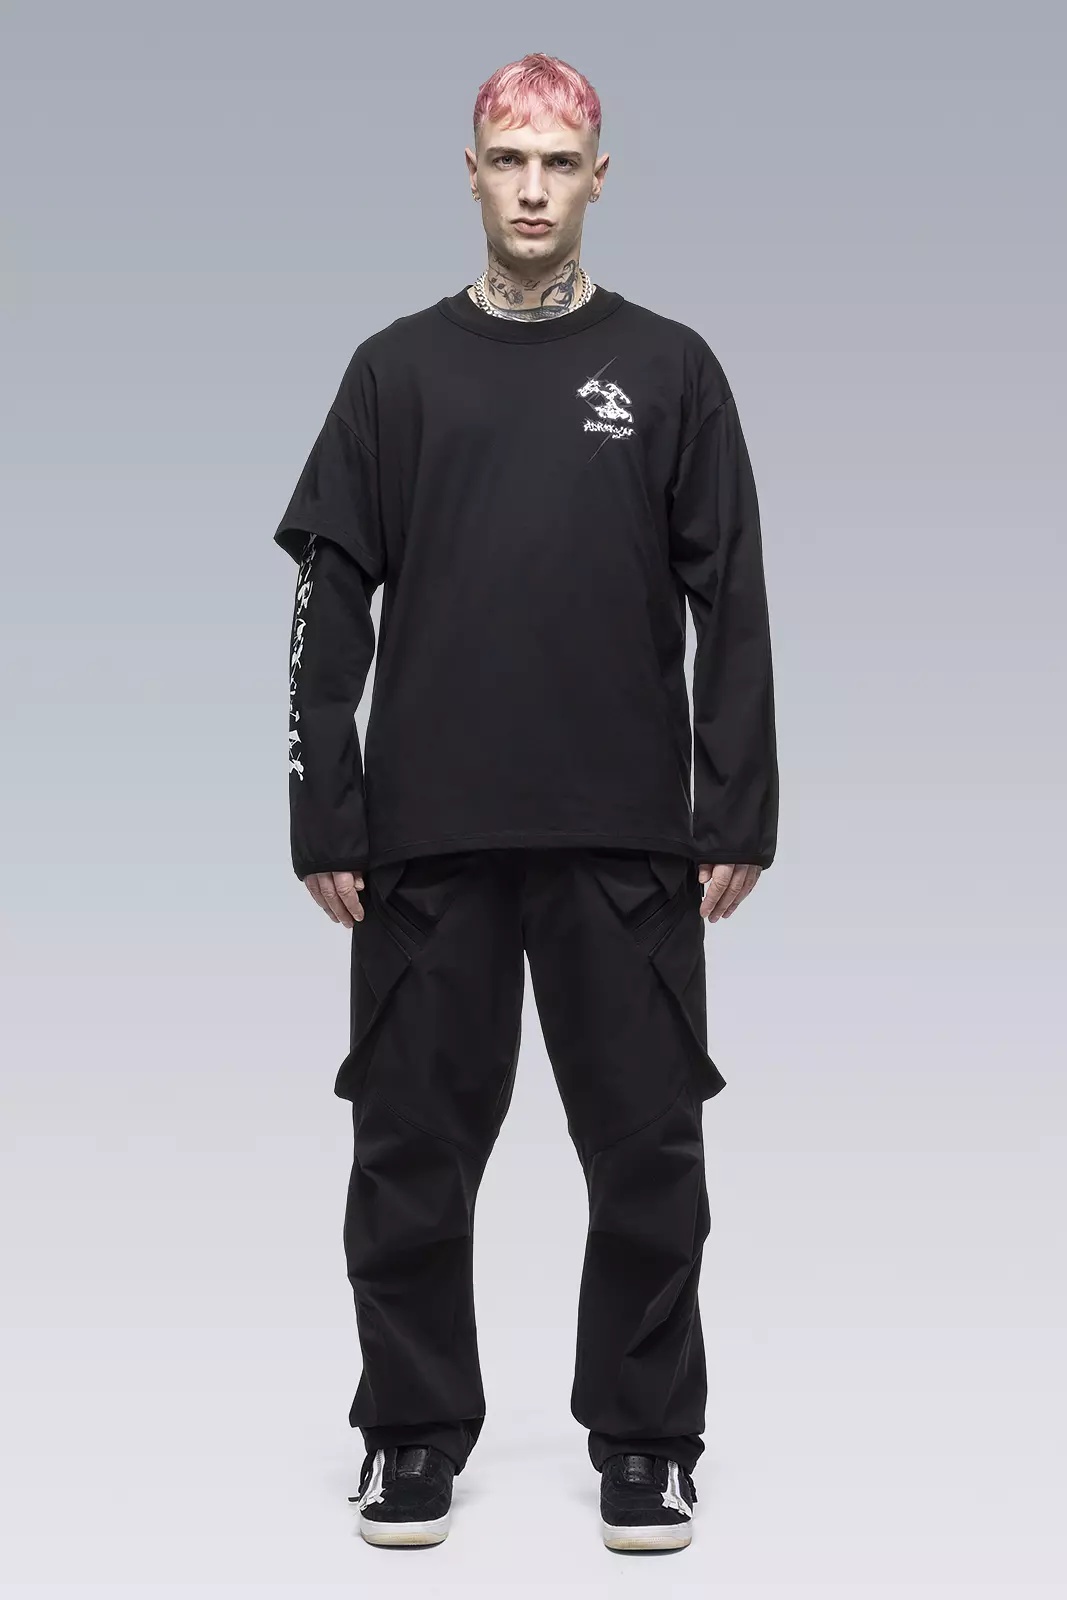 S29-PR-B 100% Organic Cotton Long Sleeve T-shirt Black - 1